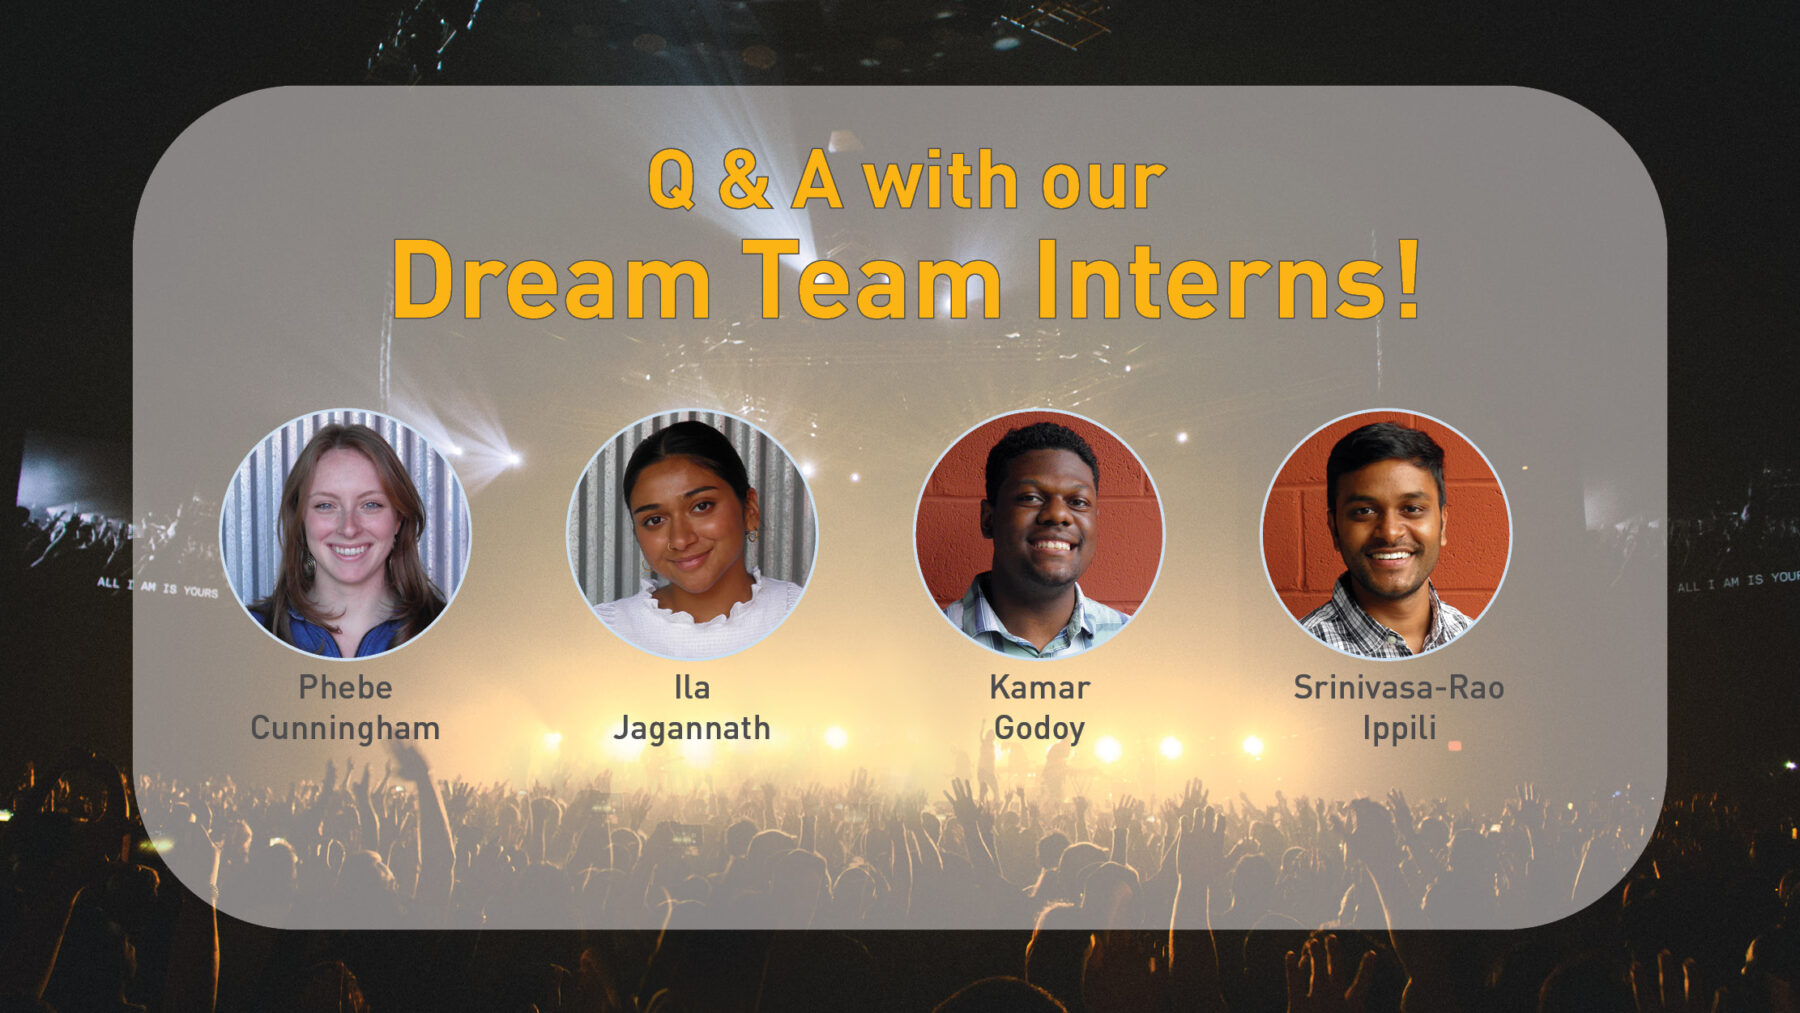 Acentech's Dream Team interns